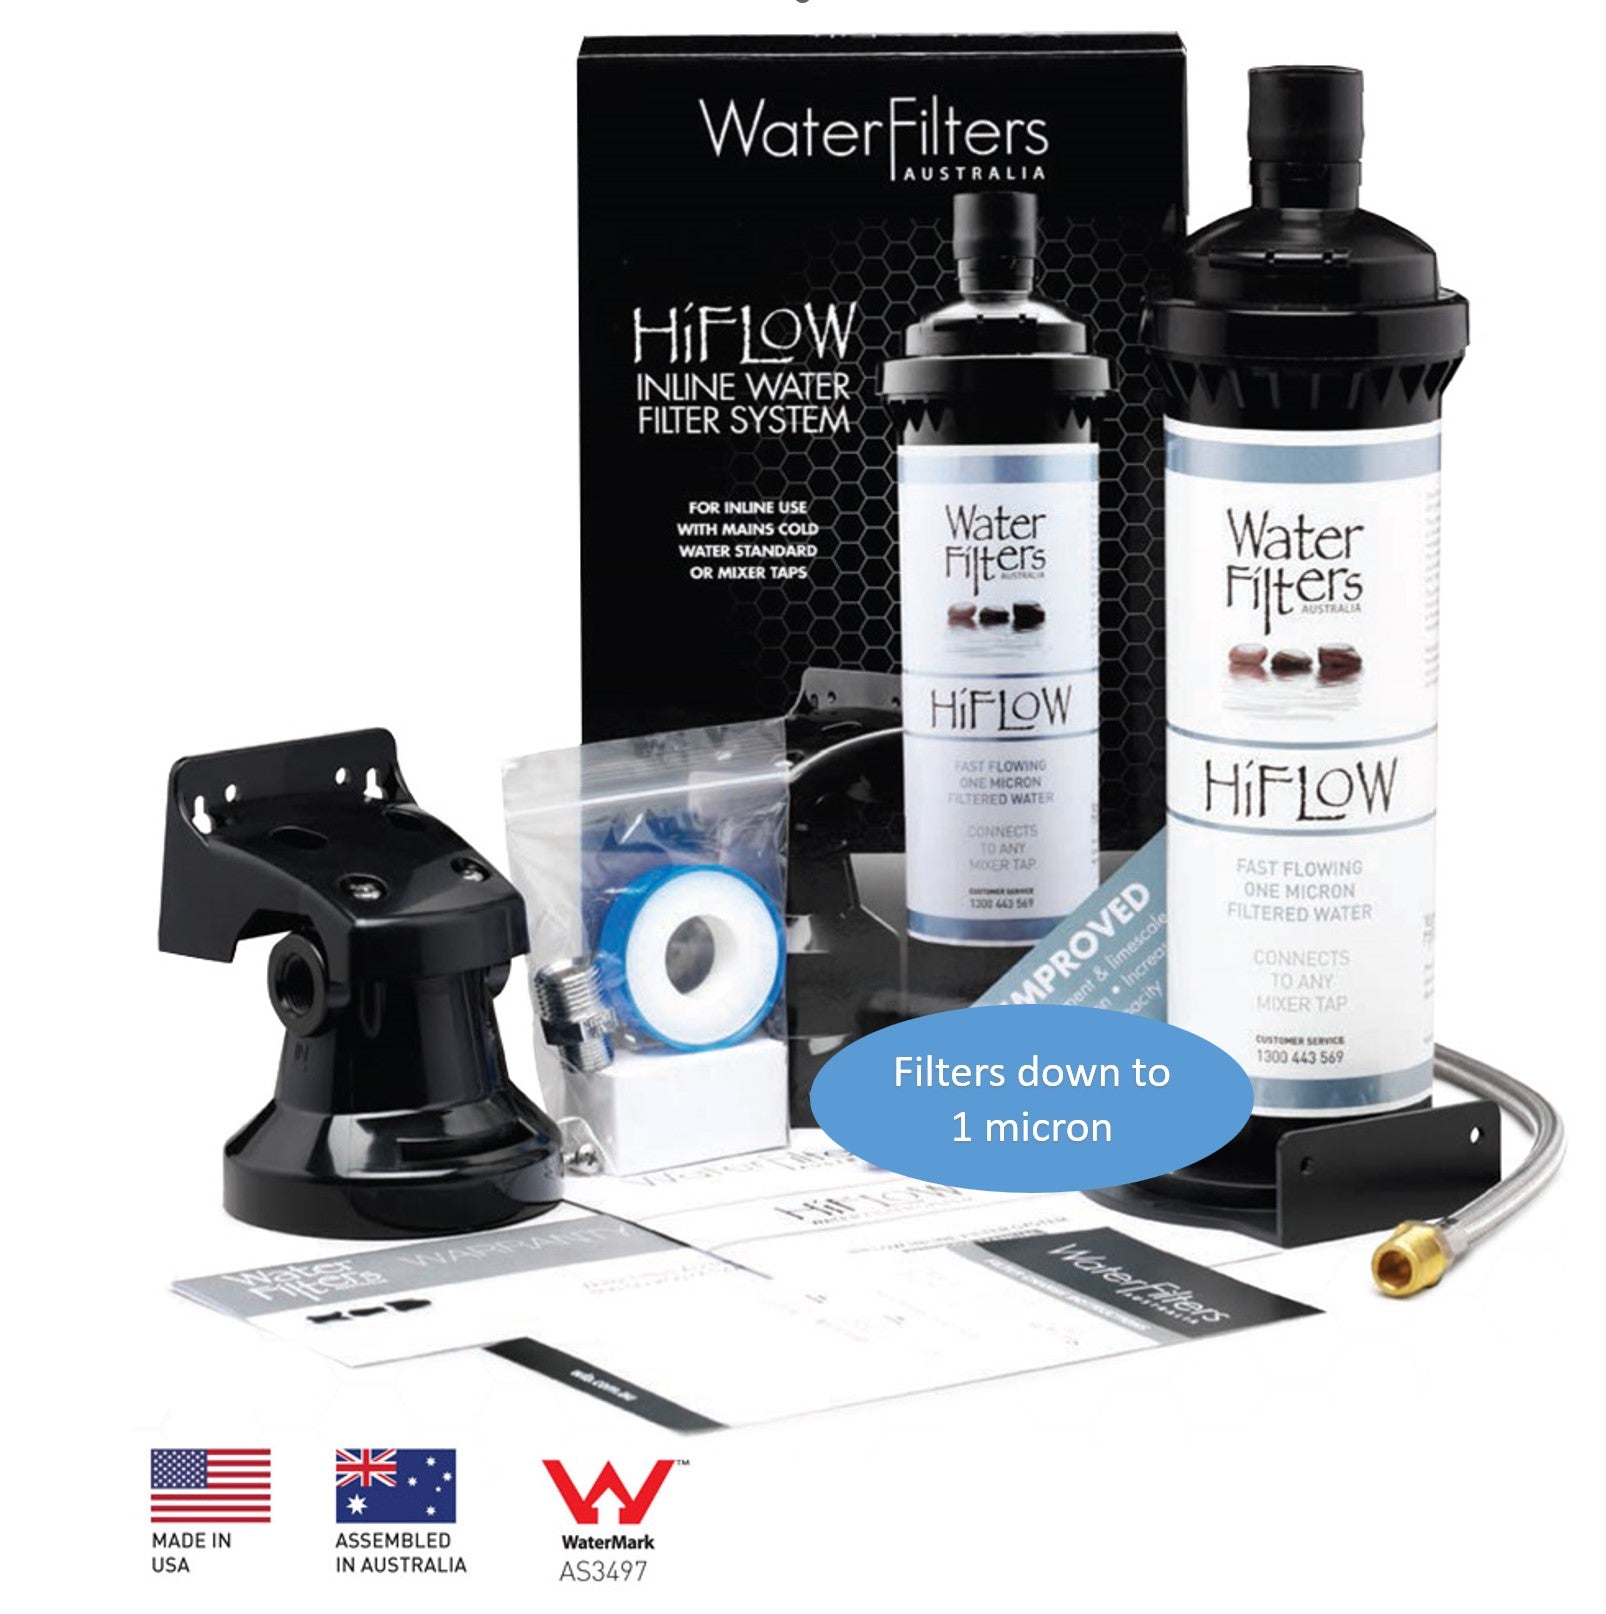 HiFlow 1 Micron Under Sink Inline Water Filter System